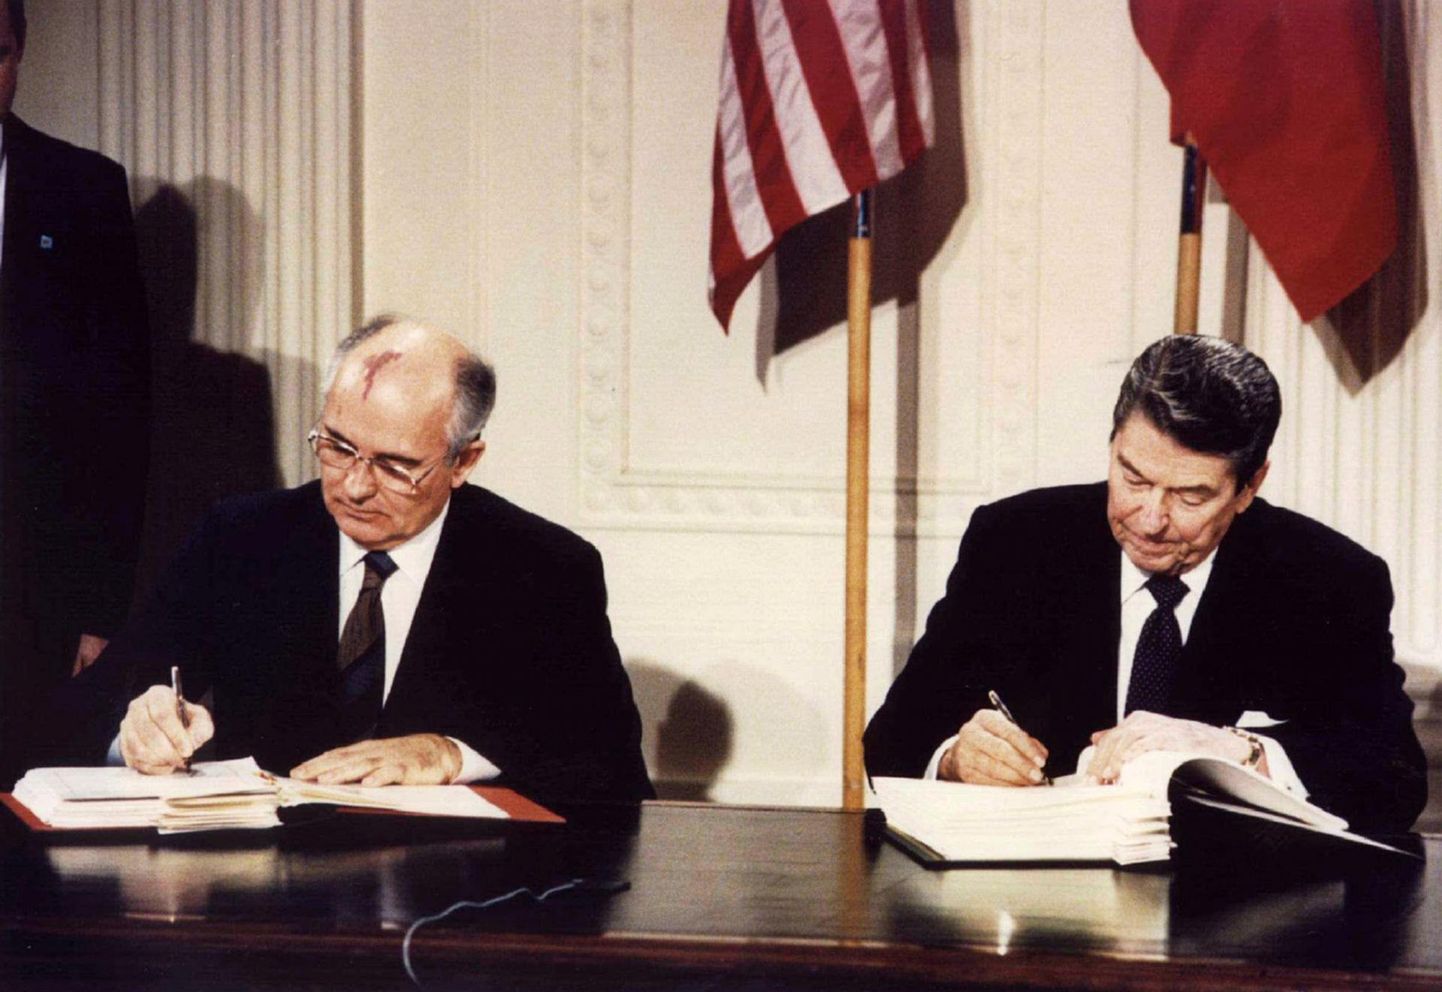 Михаил Горбачев и Рональд Рейган подписали Договор о ликвидации ракет средней и меньшей дальности 8 декабря 1987 года.